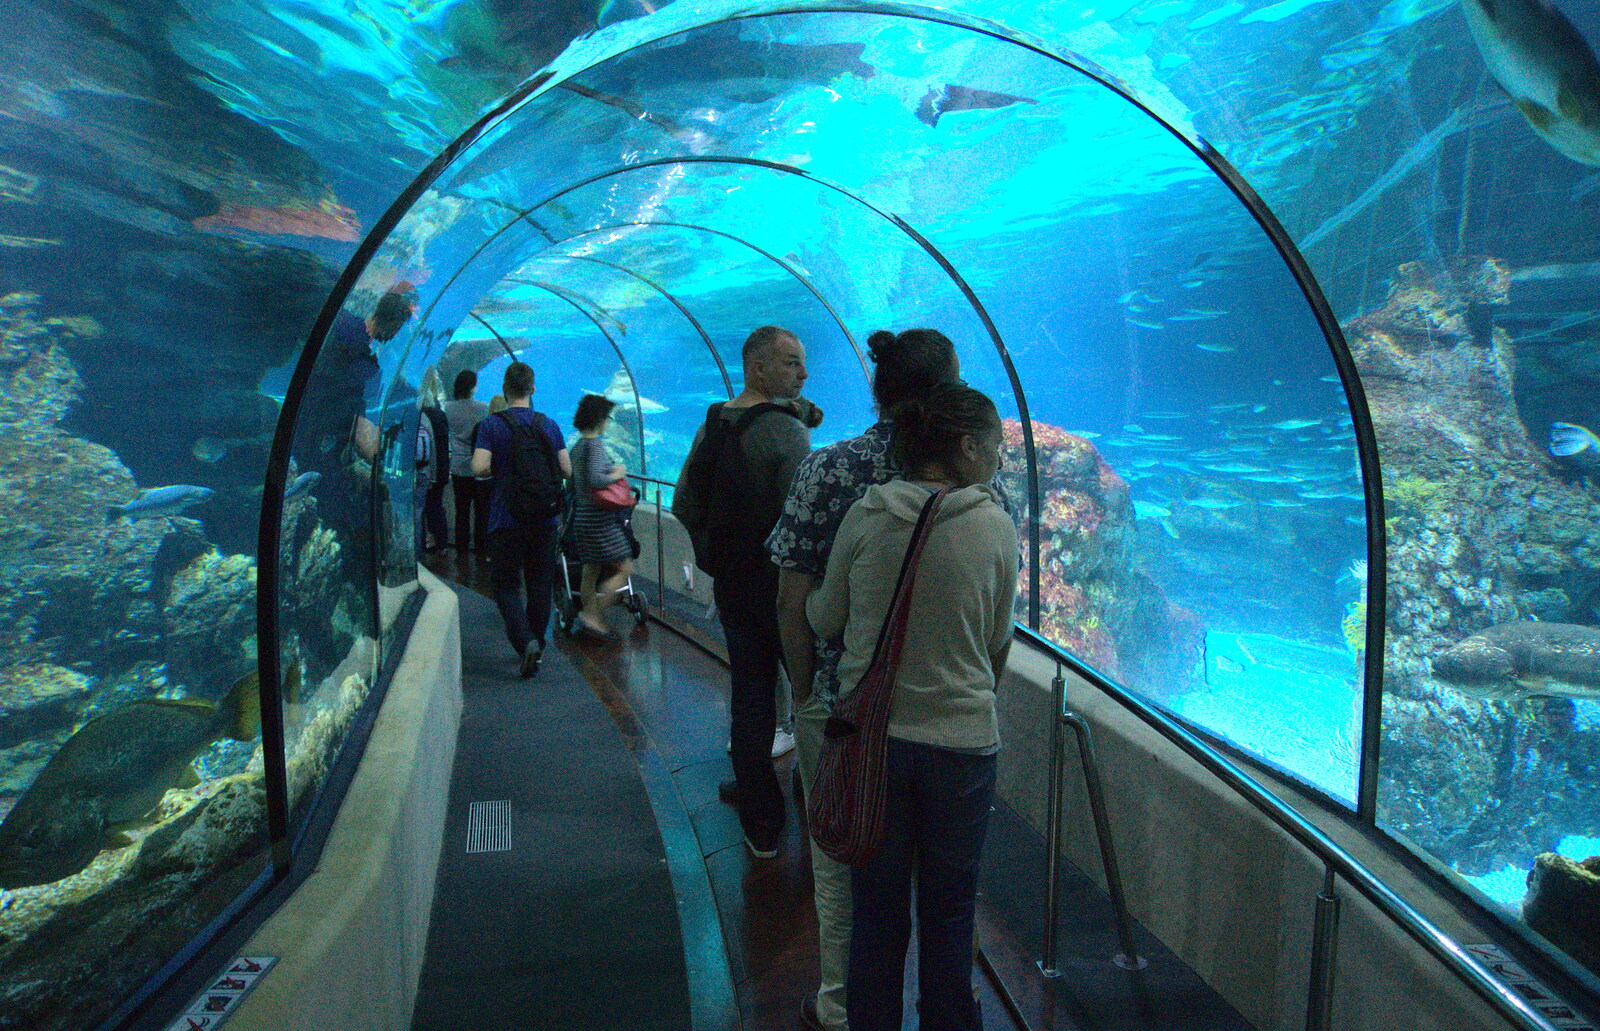 Under the shark tunnel from L'Aquarium de Barcelona, Port Vell, Catalonia, Spain - 23rd October 2017